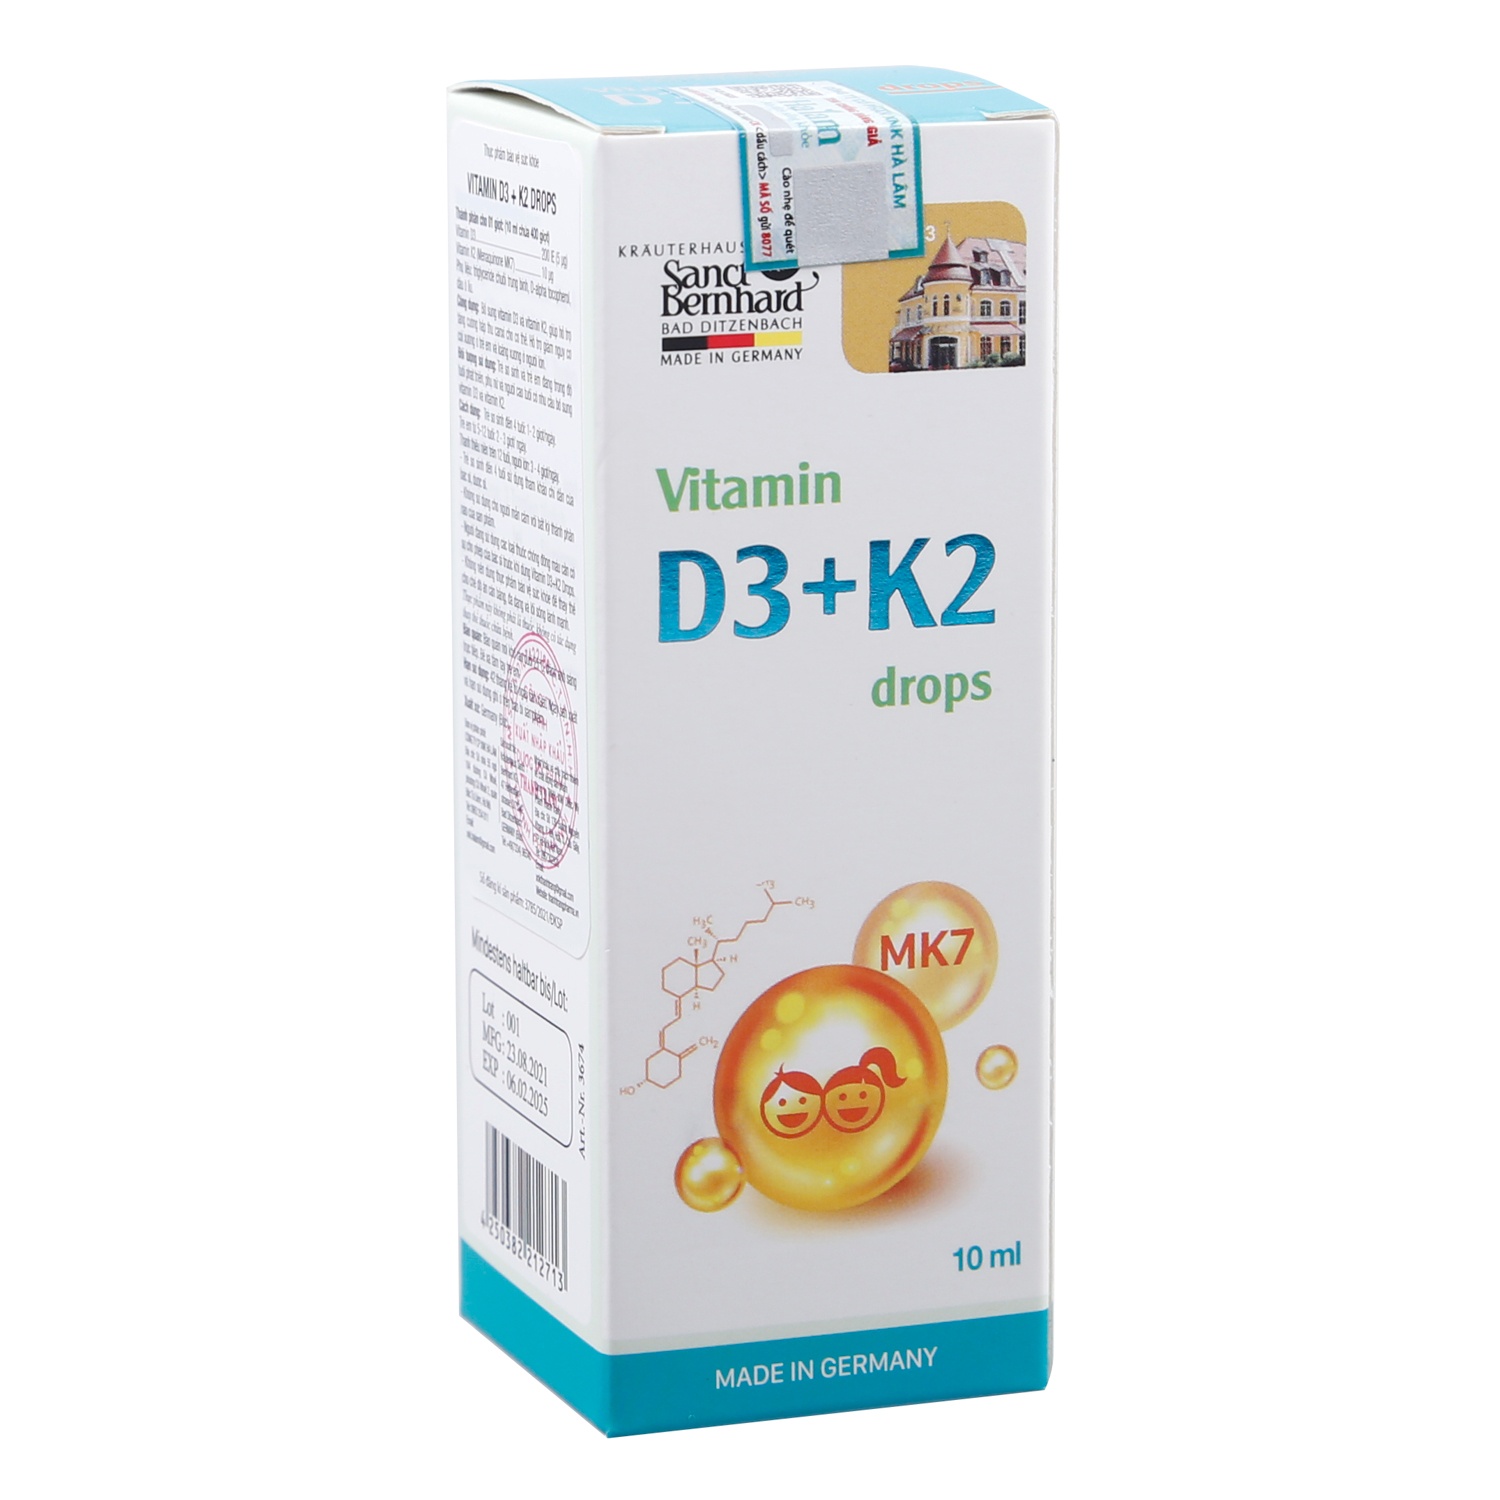 vitamin-d3-k2-mk7-duc-gia-bao-nhiêu-2